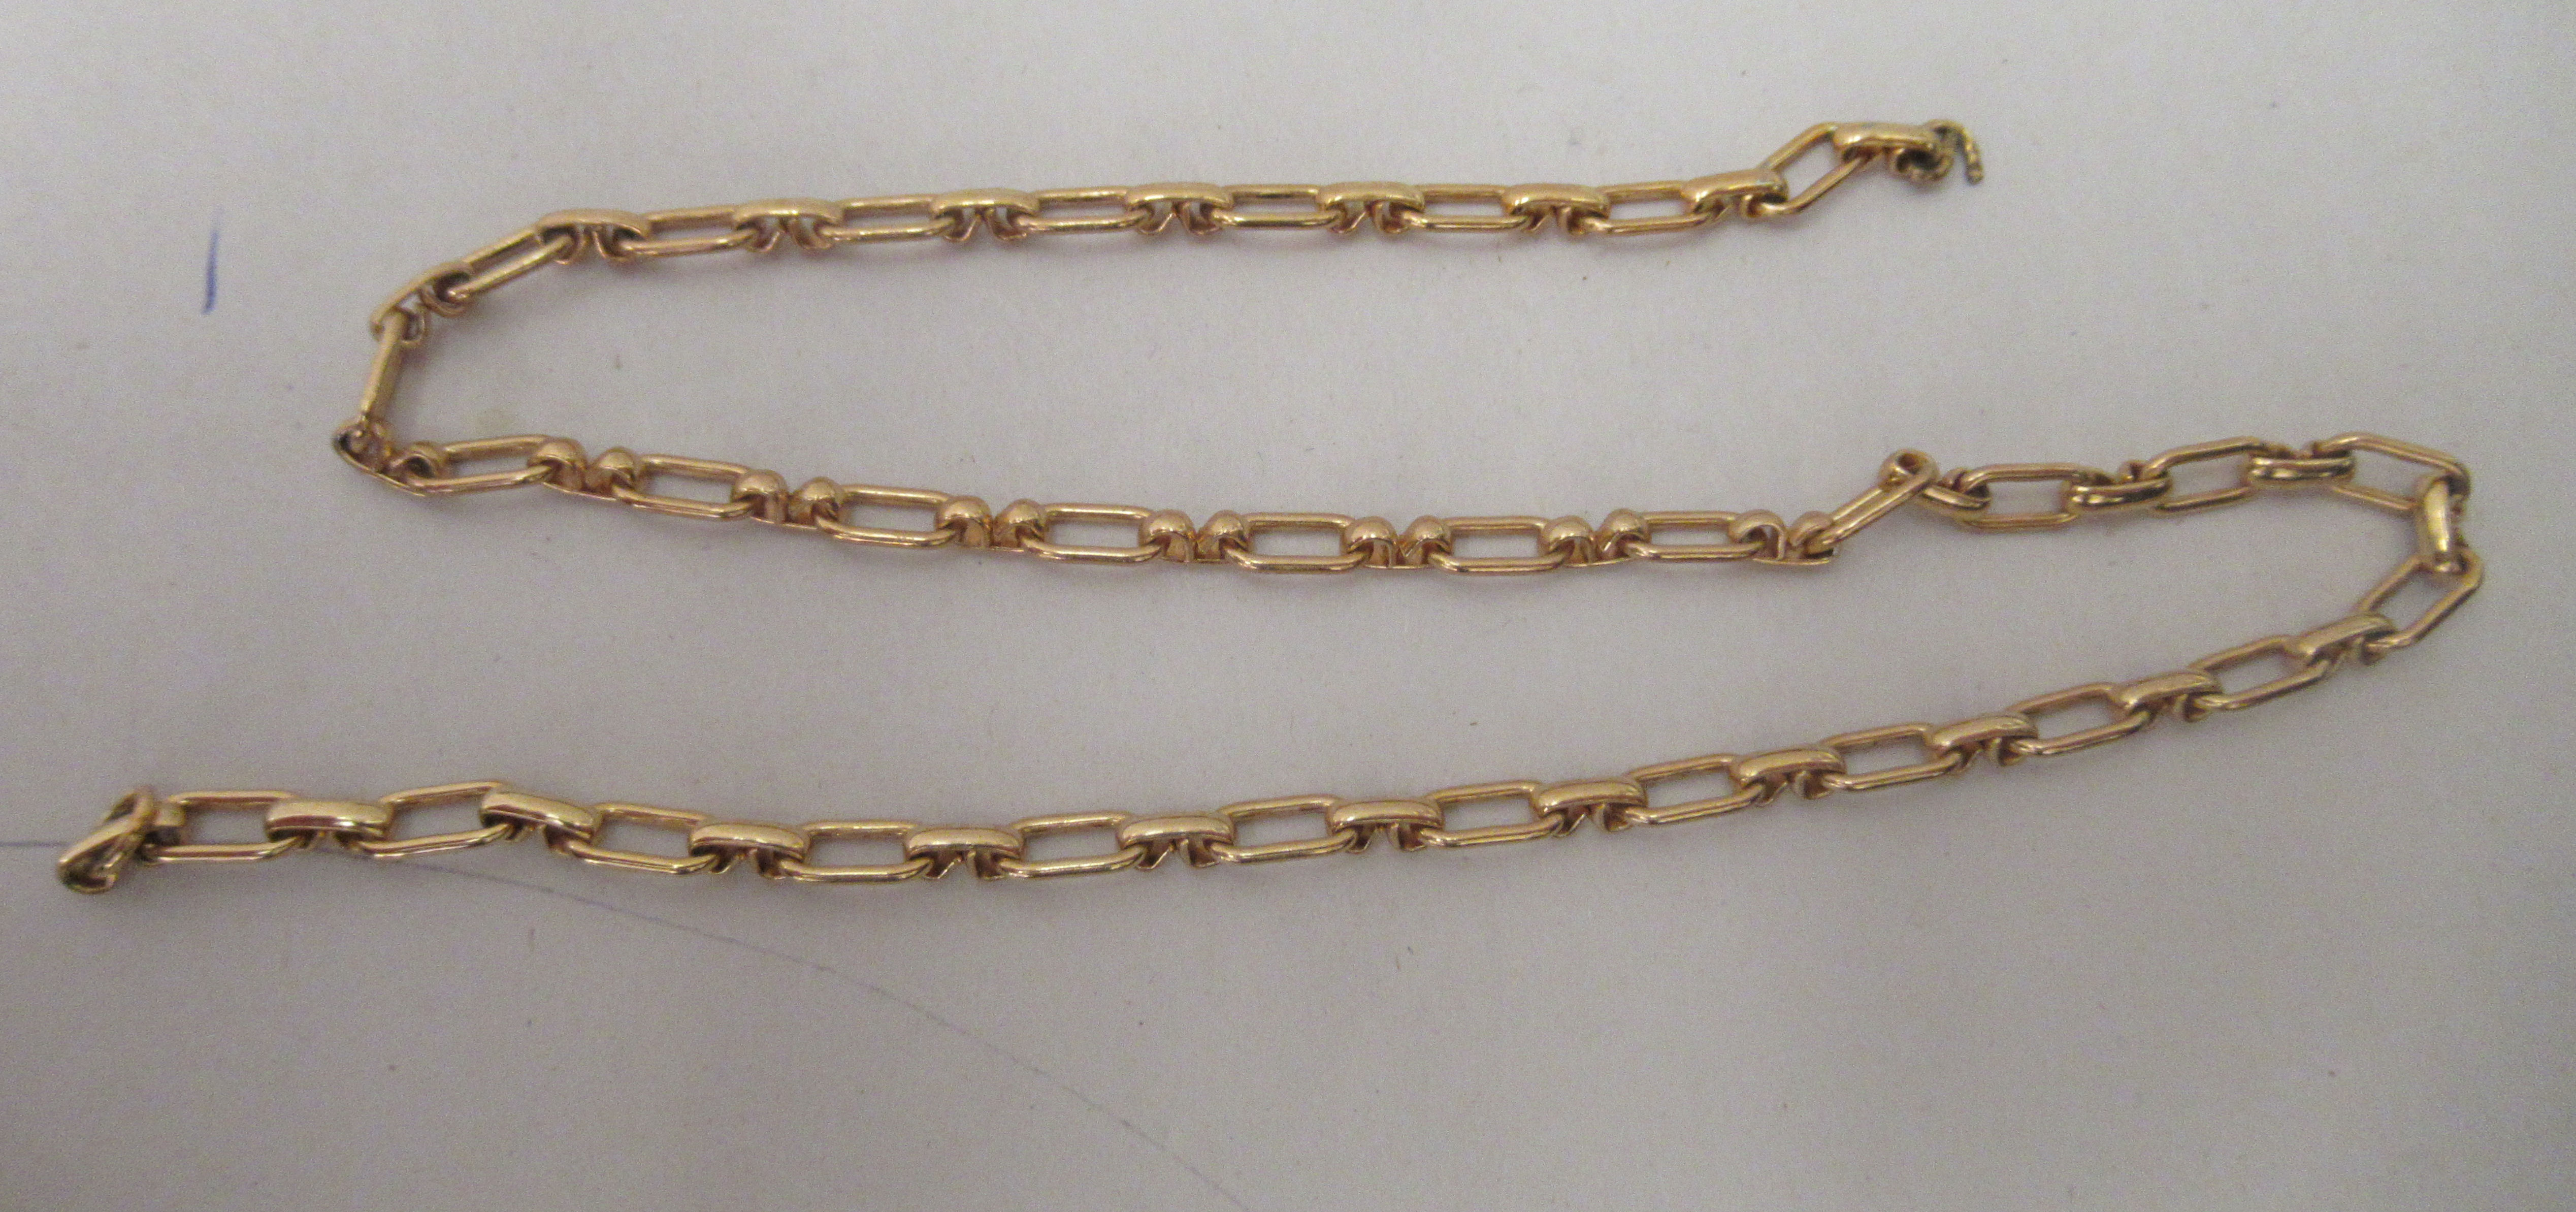 A yellow metal hoop link neckchain